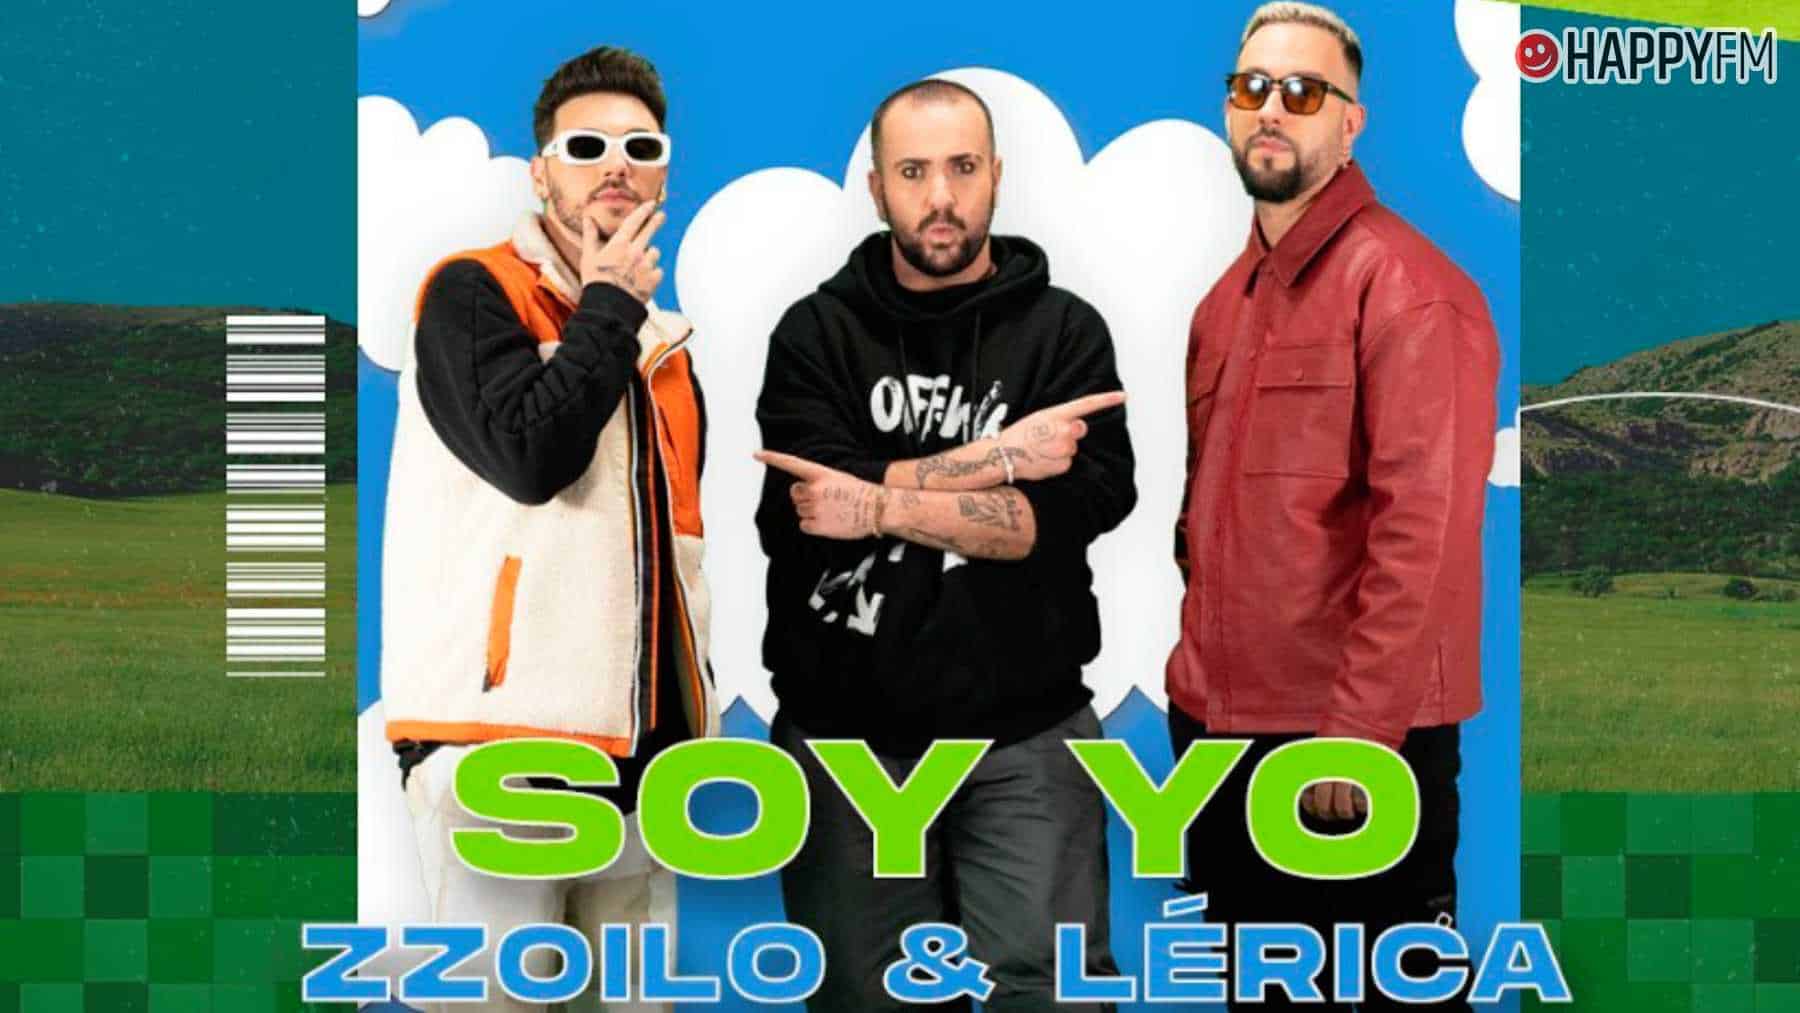 ‘Soy yo’, de Zzoilo y Lérica: letra y vídeo loading=